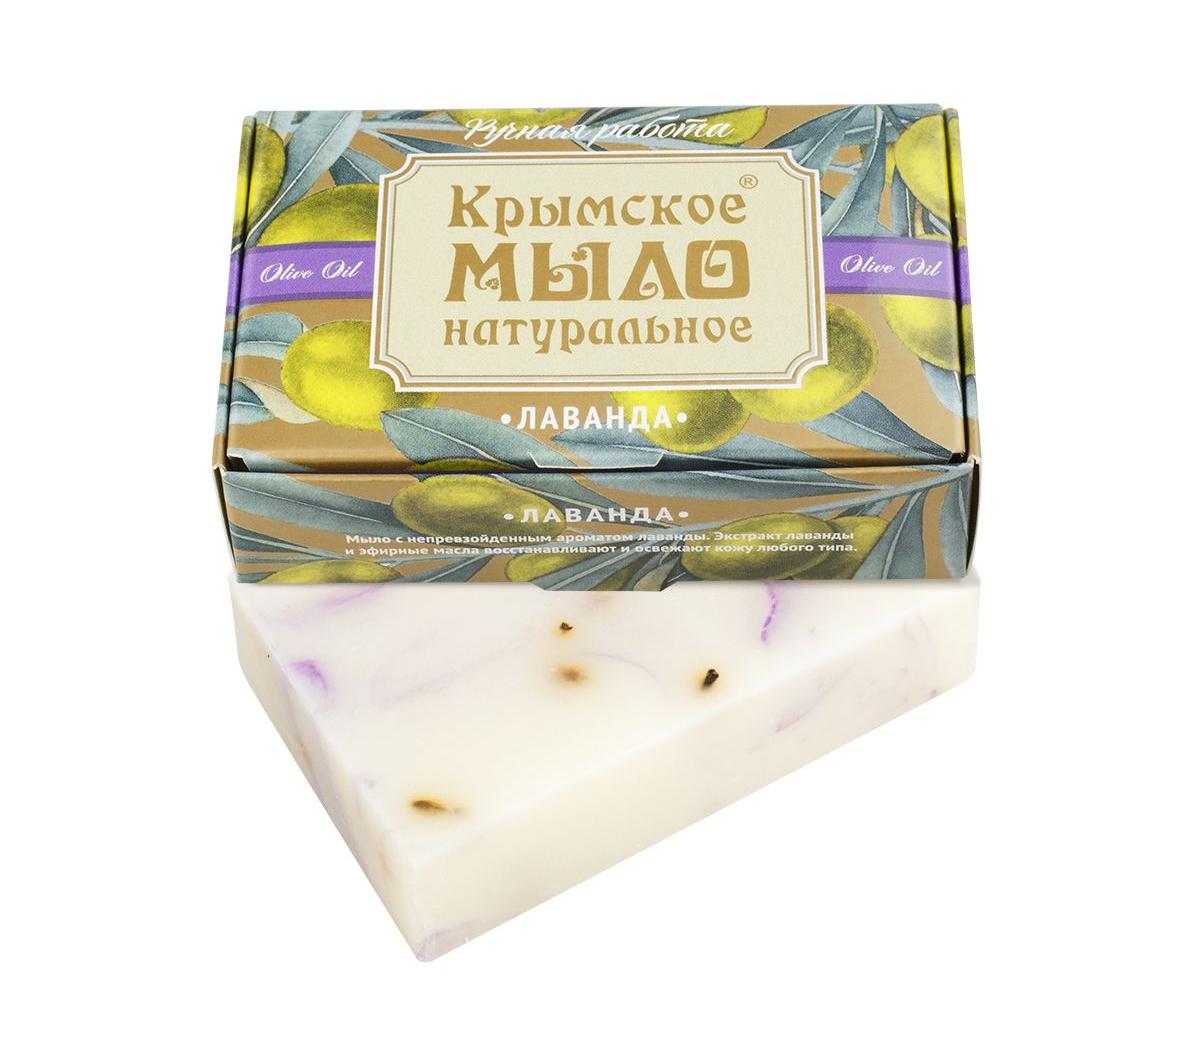 Крымское натуральное мыло на оливковом масле ЛАВАНДА,100г купить в онлайн экомаркете